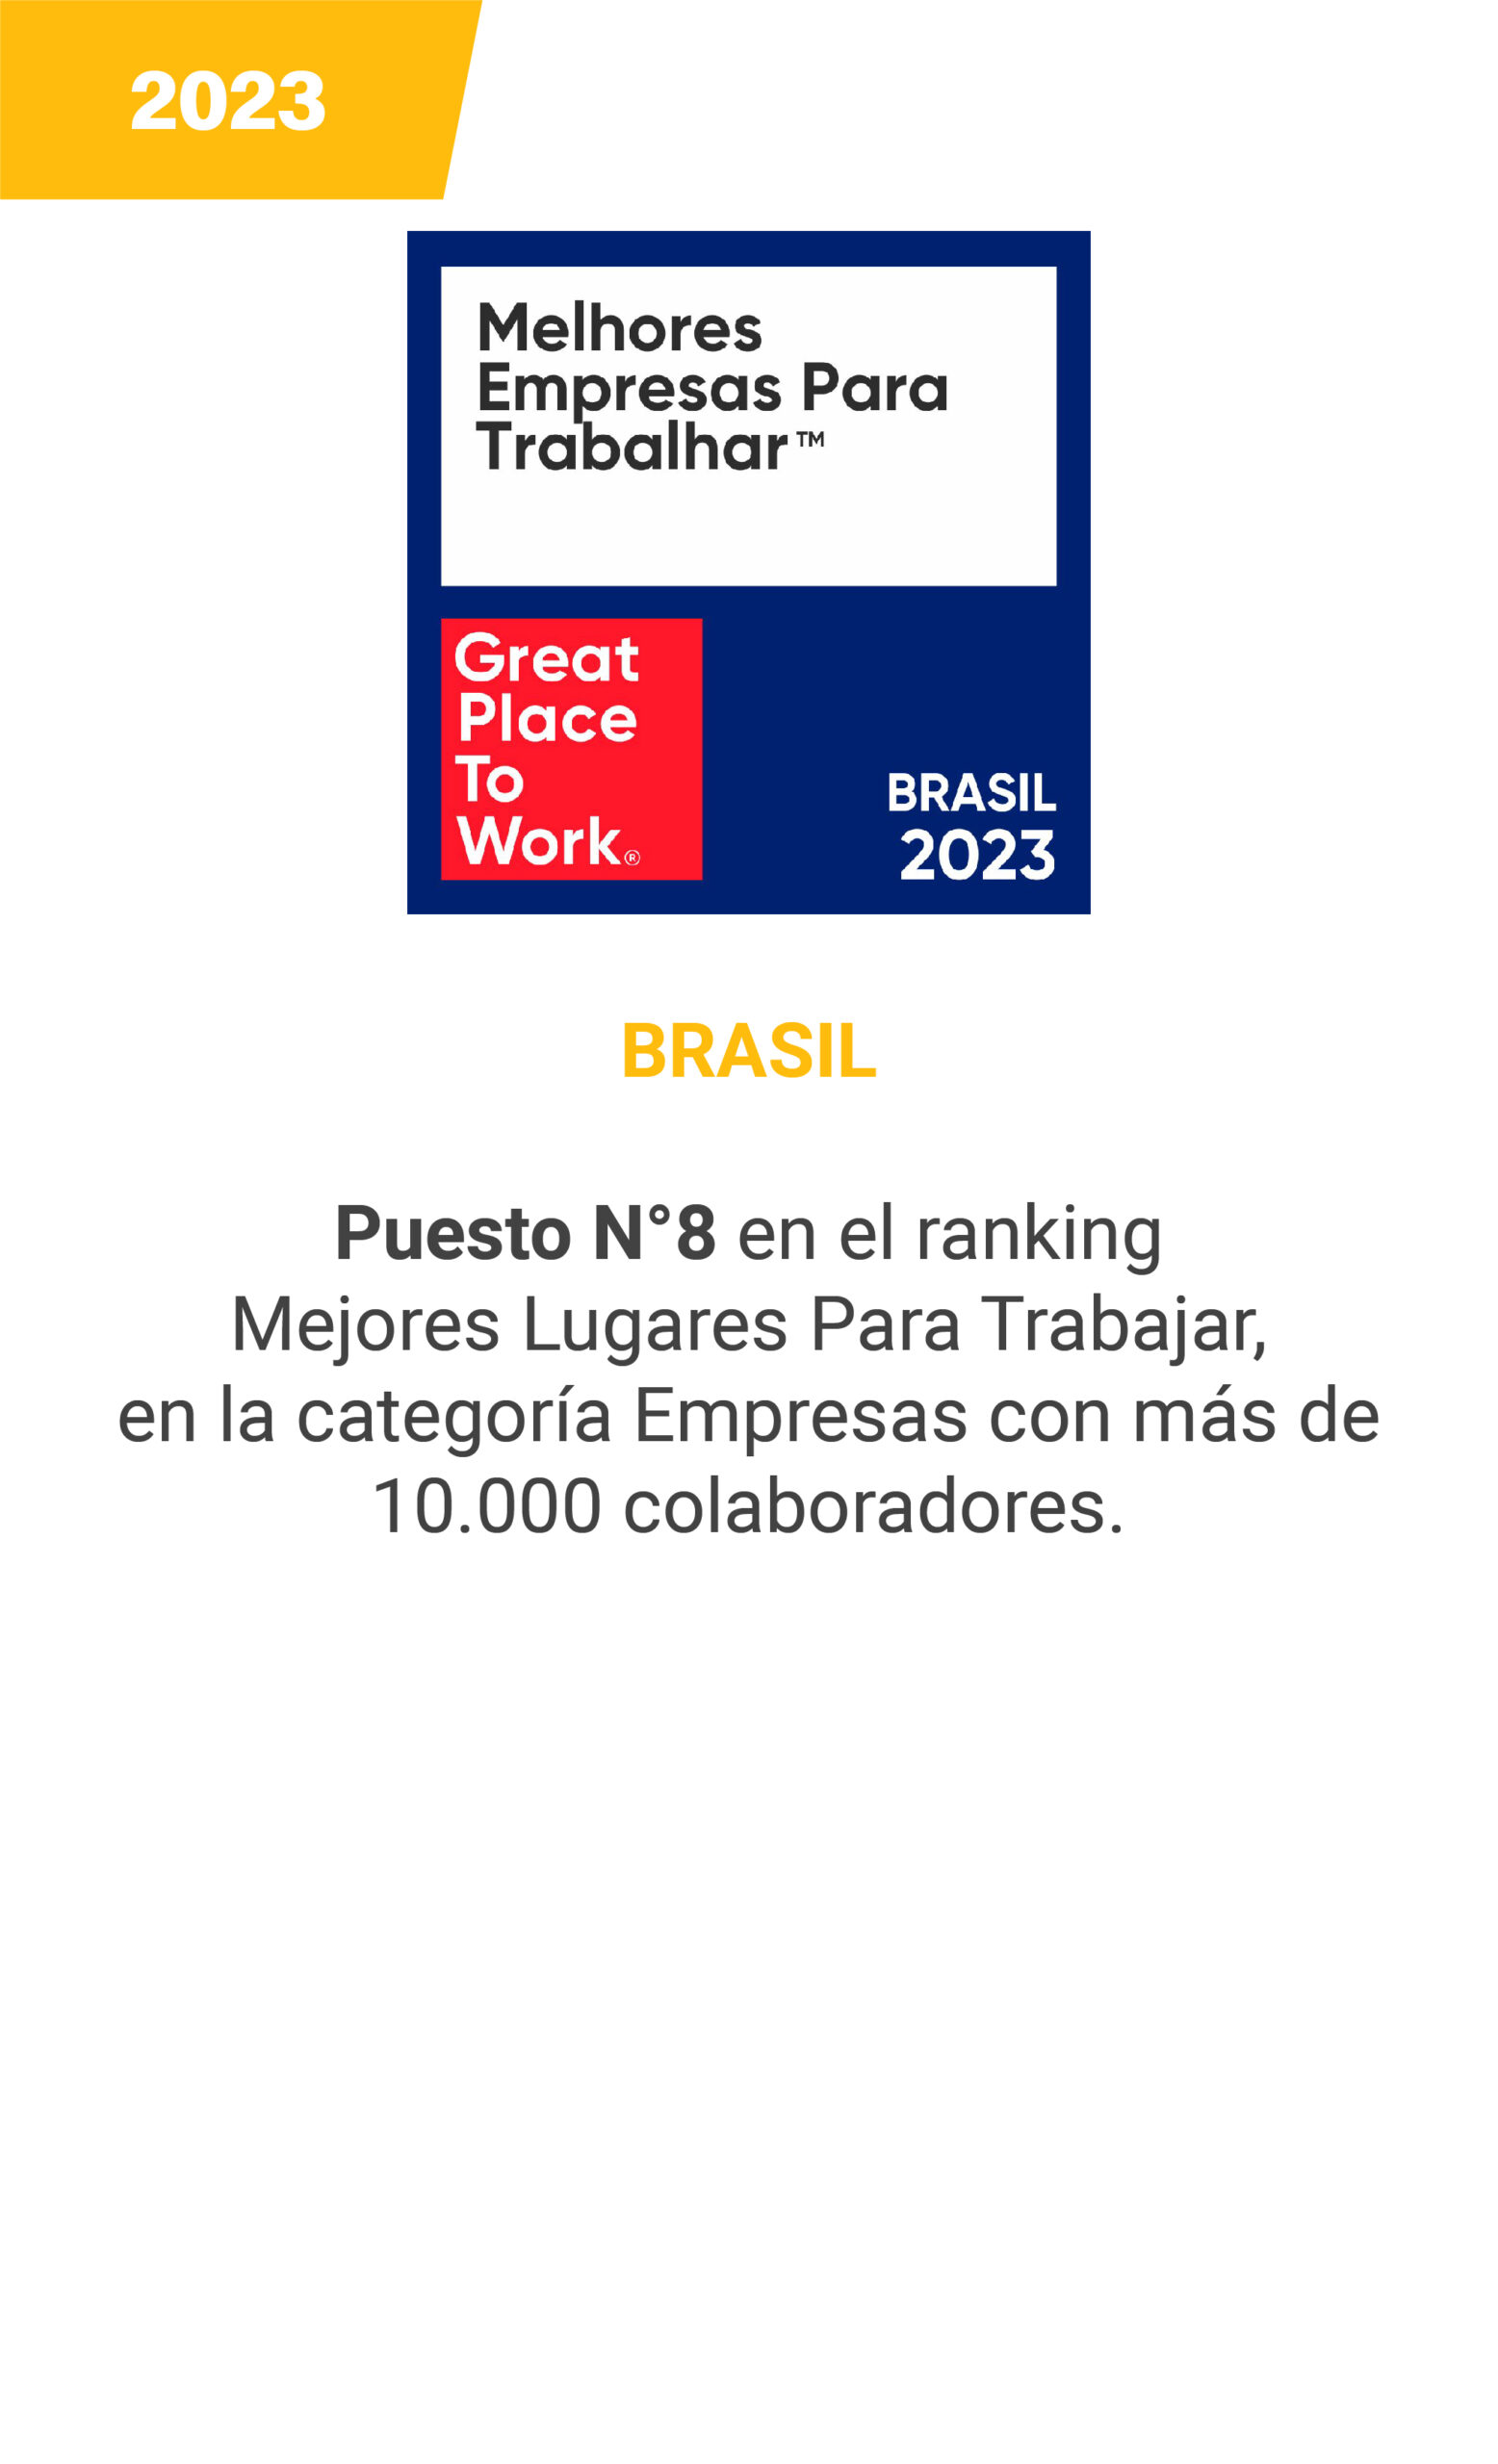 GPTW - Brasil 2023 - mobile